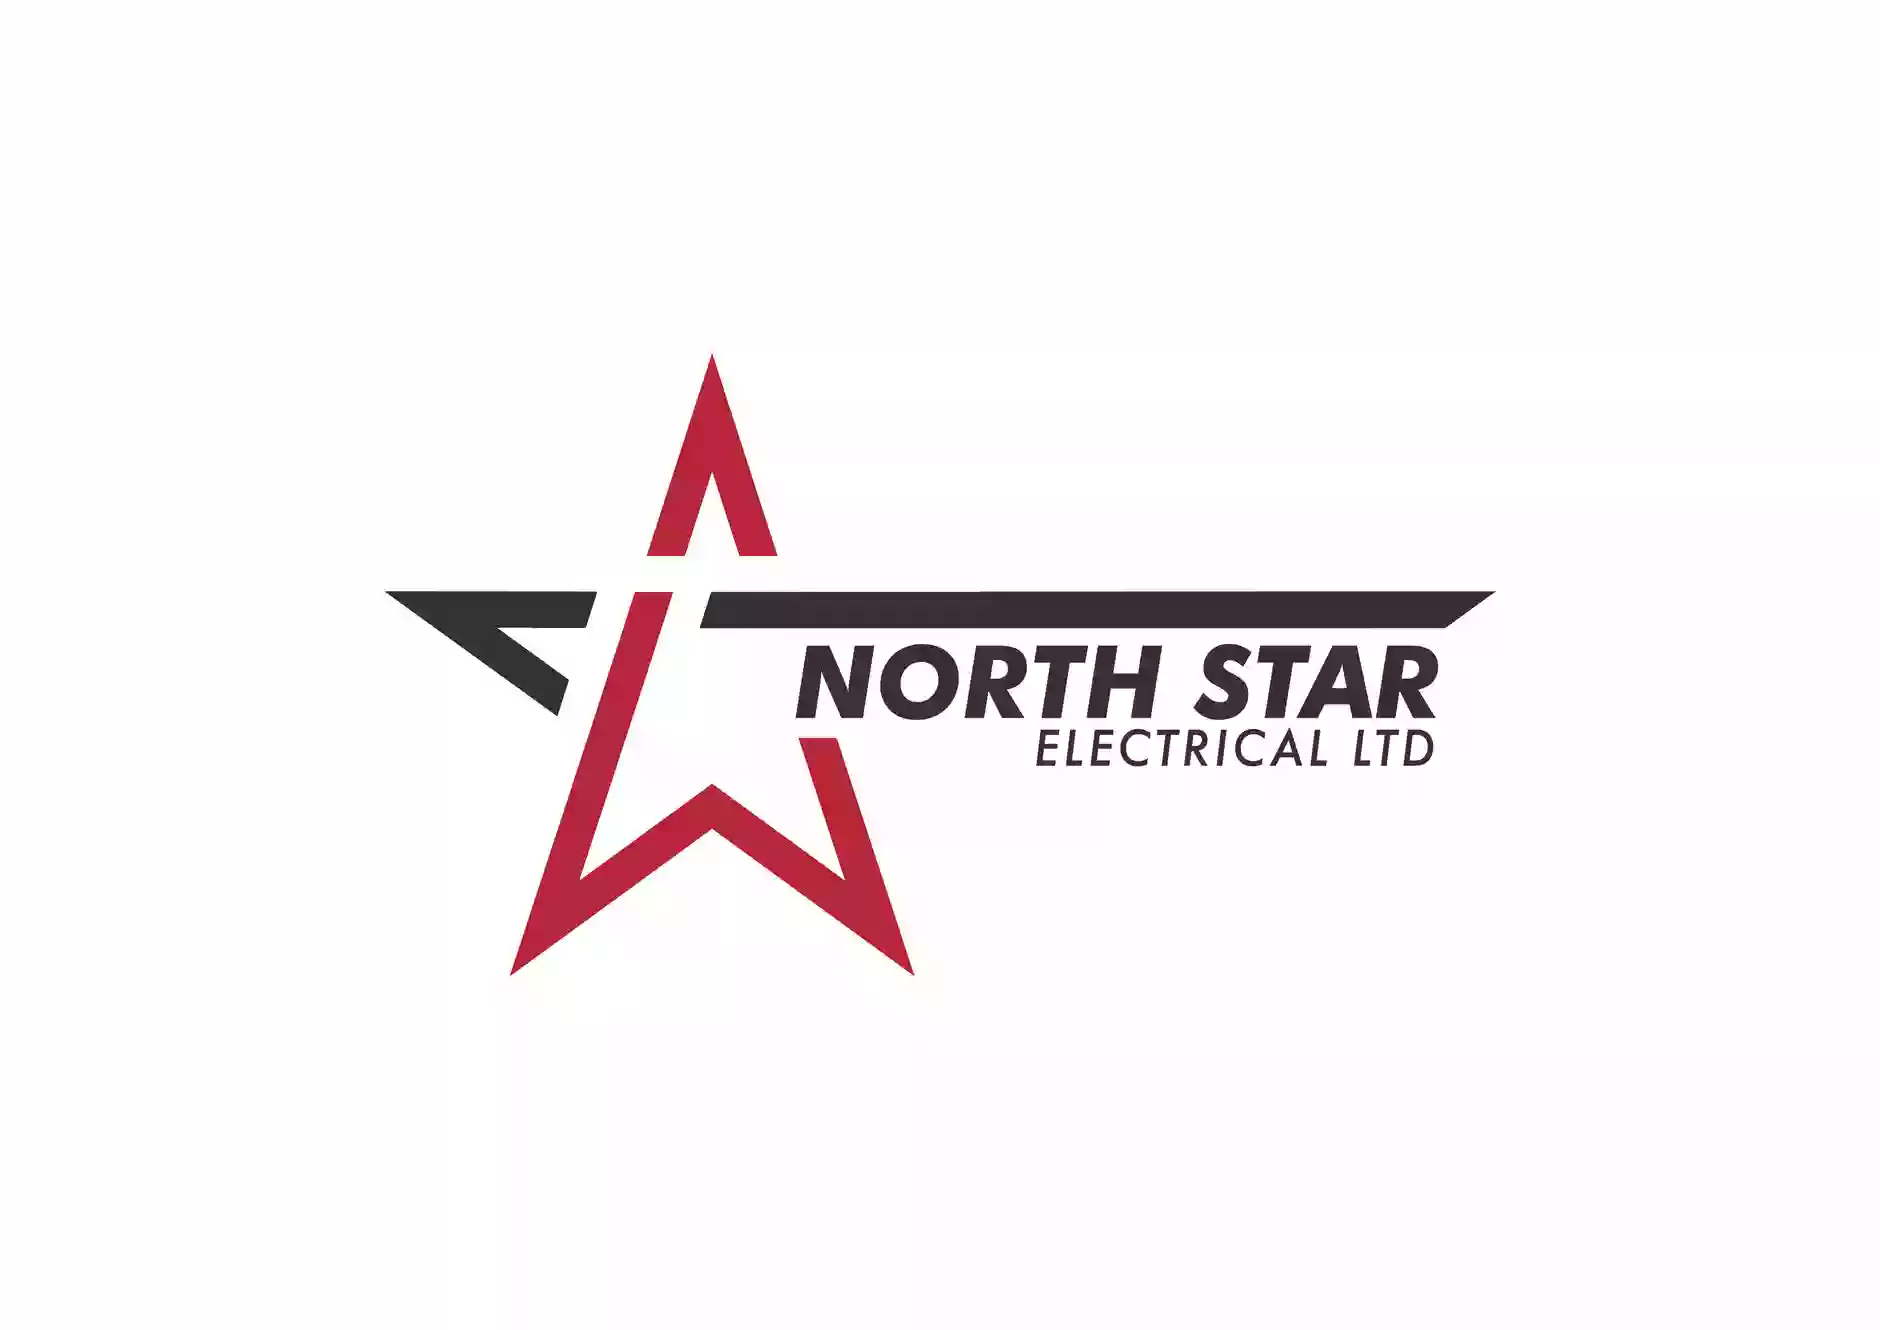 North Star Electrical Ltd